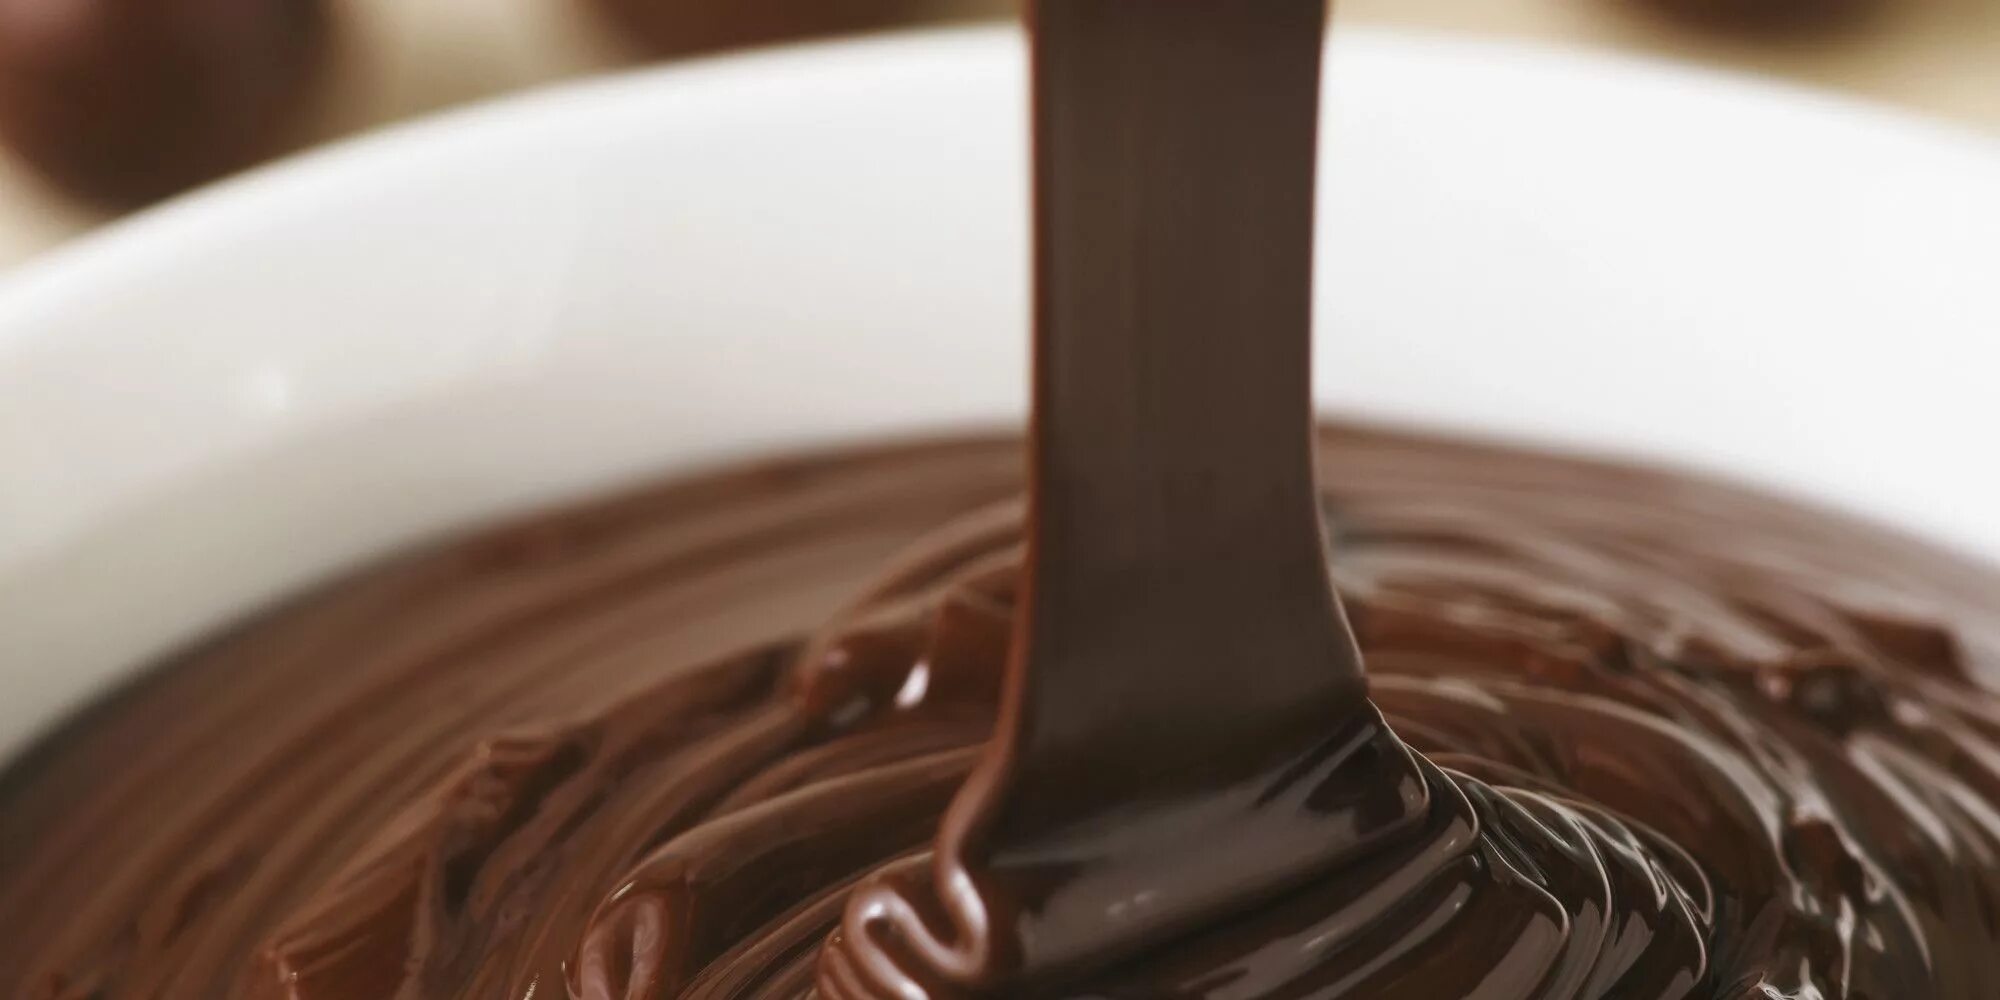 Шоколадный крем молоко какао. Шоколадная глазурь кувертюр. Кувертюр шоколадная шоколадная глазурь. Шоколадная глазурь ганаш. Крем ганаш.